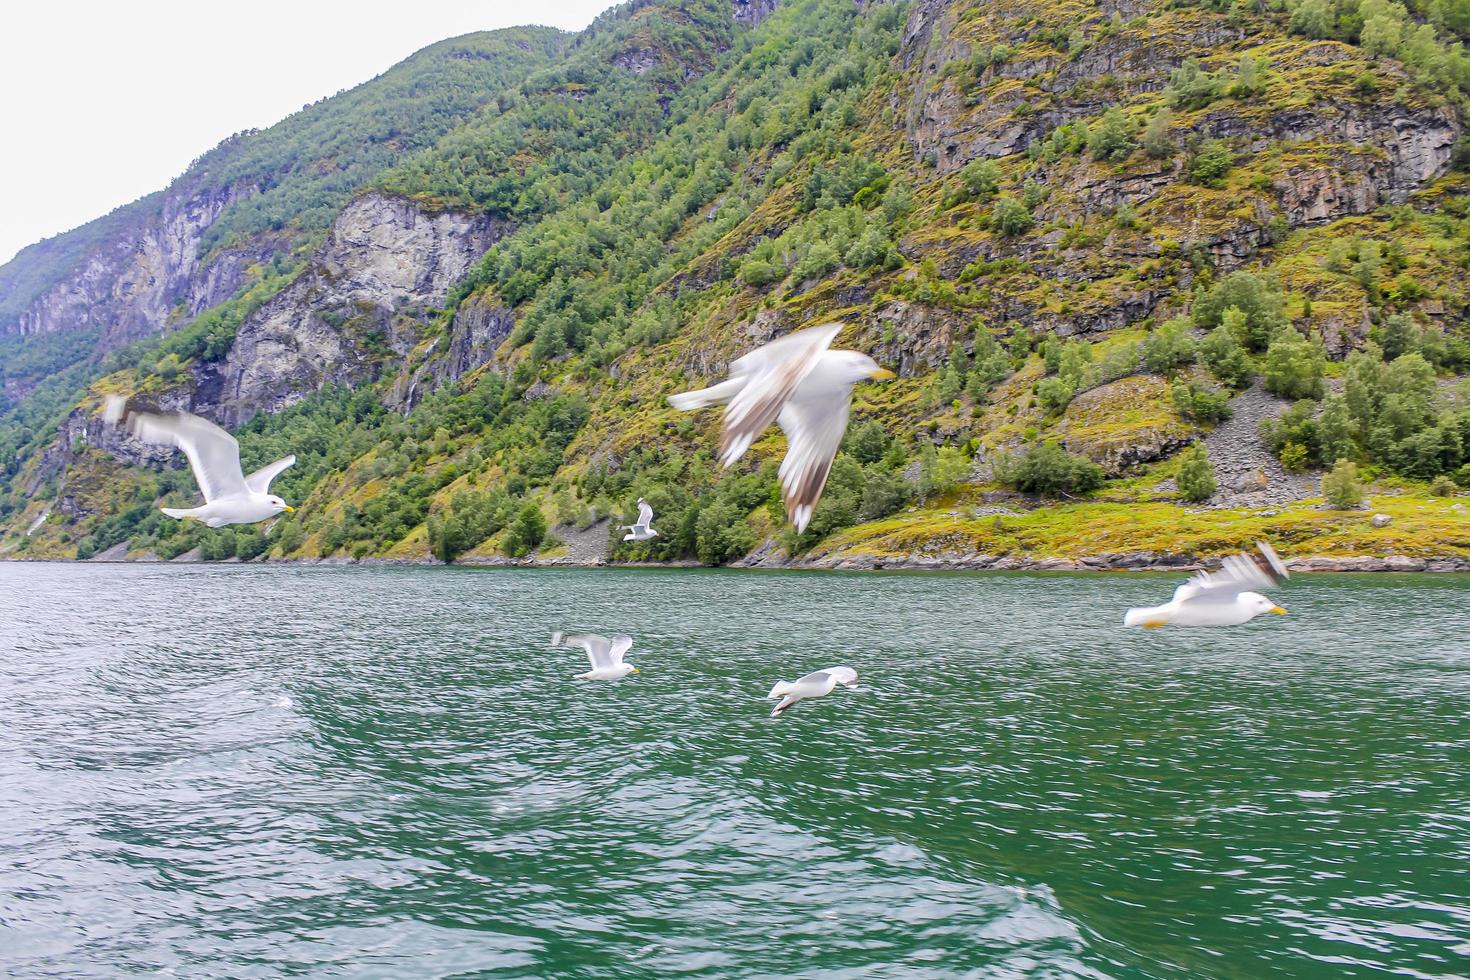 Las gaviotas vuelan a través del hermoso paisaje de los fiordos de montaña en Noruega. foto